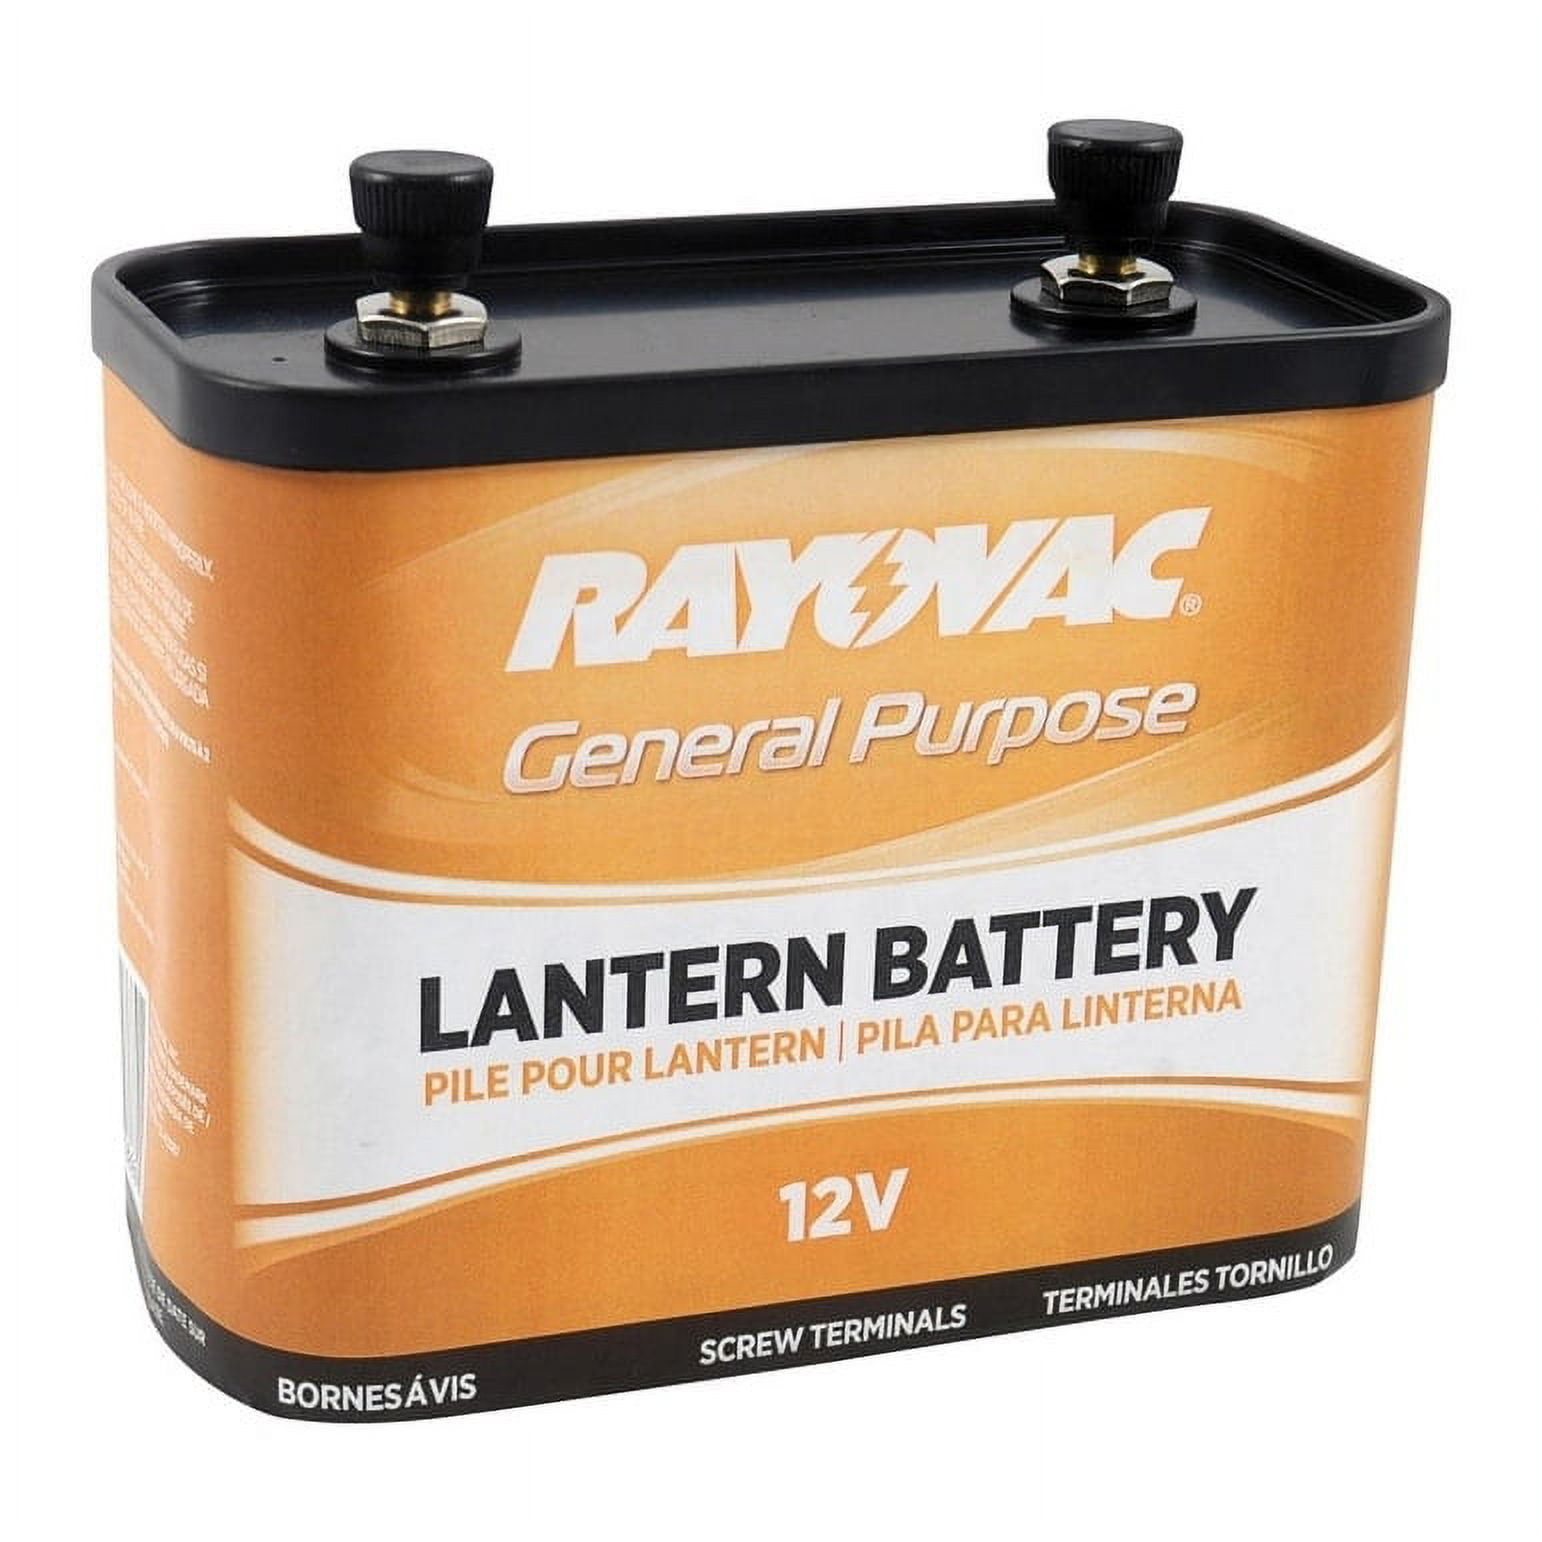 Rayovac - 926 - Rayovac 926 Lantern Battery, General Purpose, 12